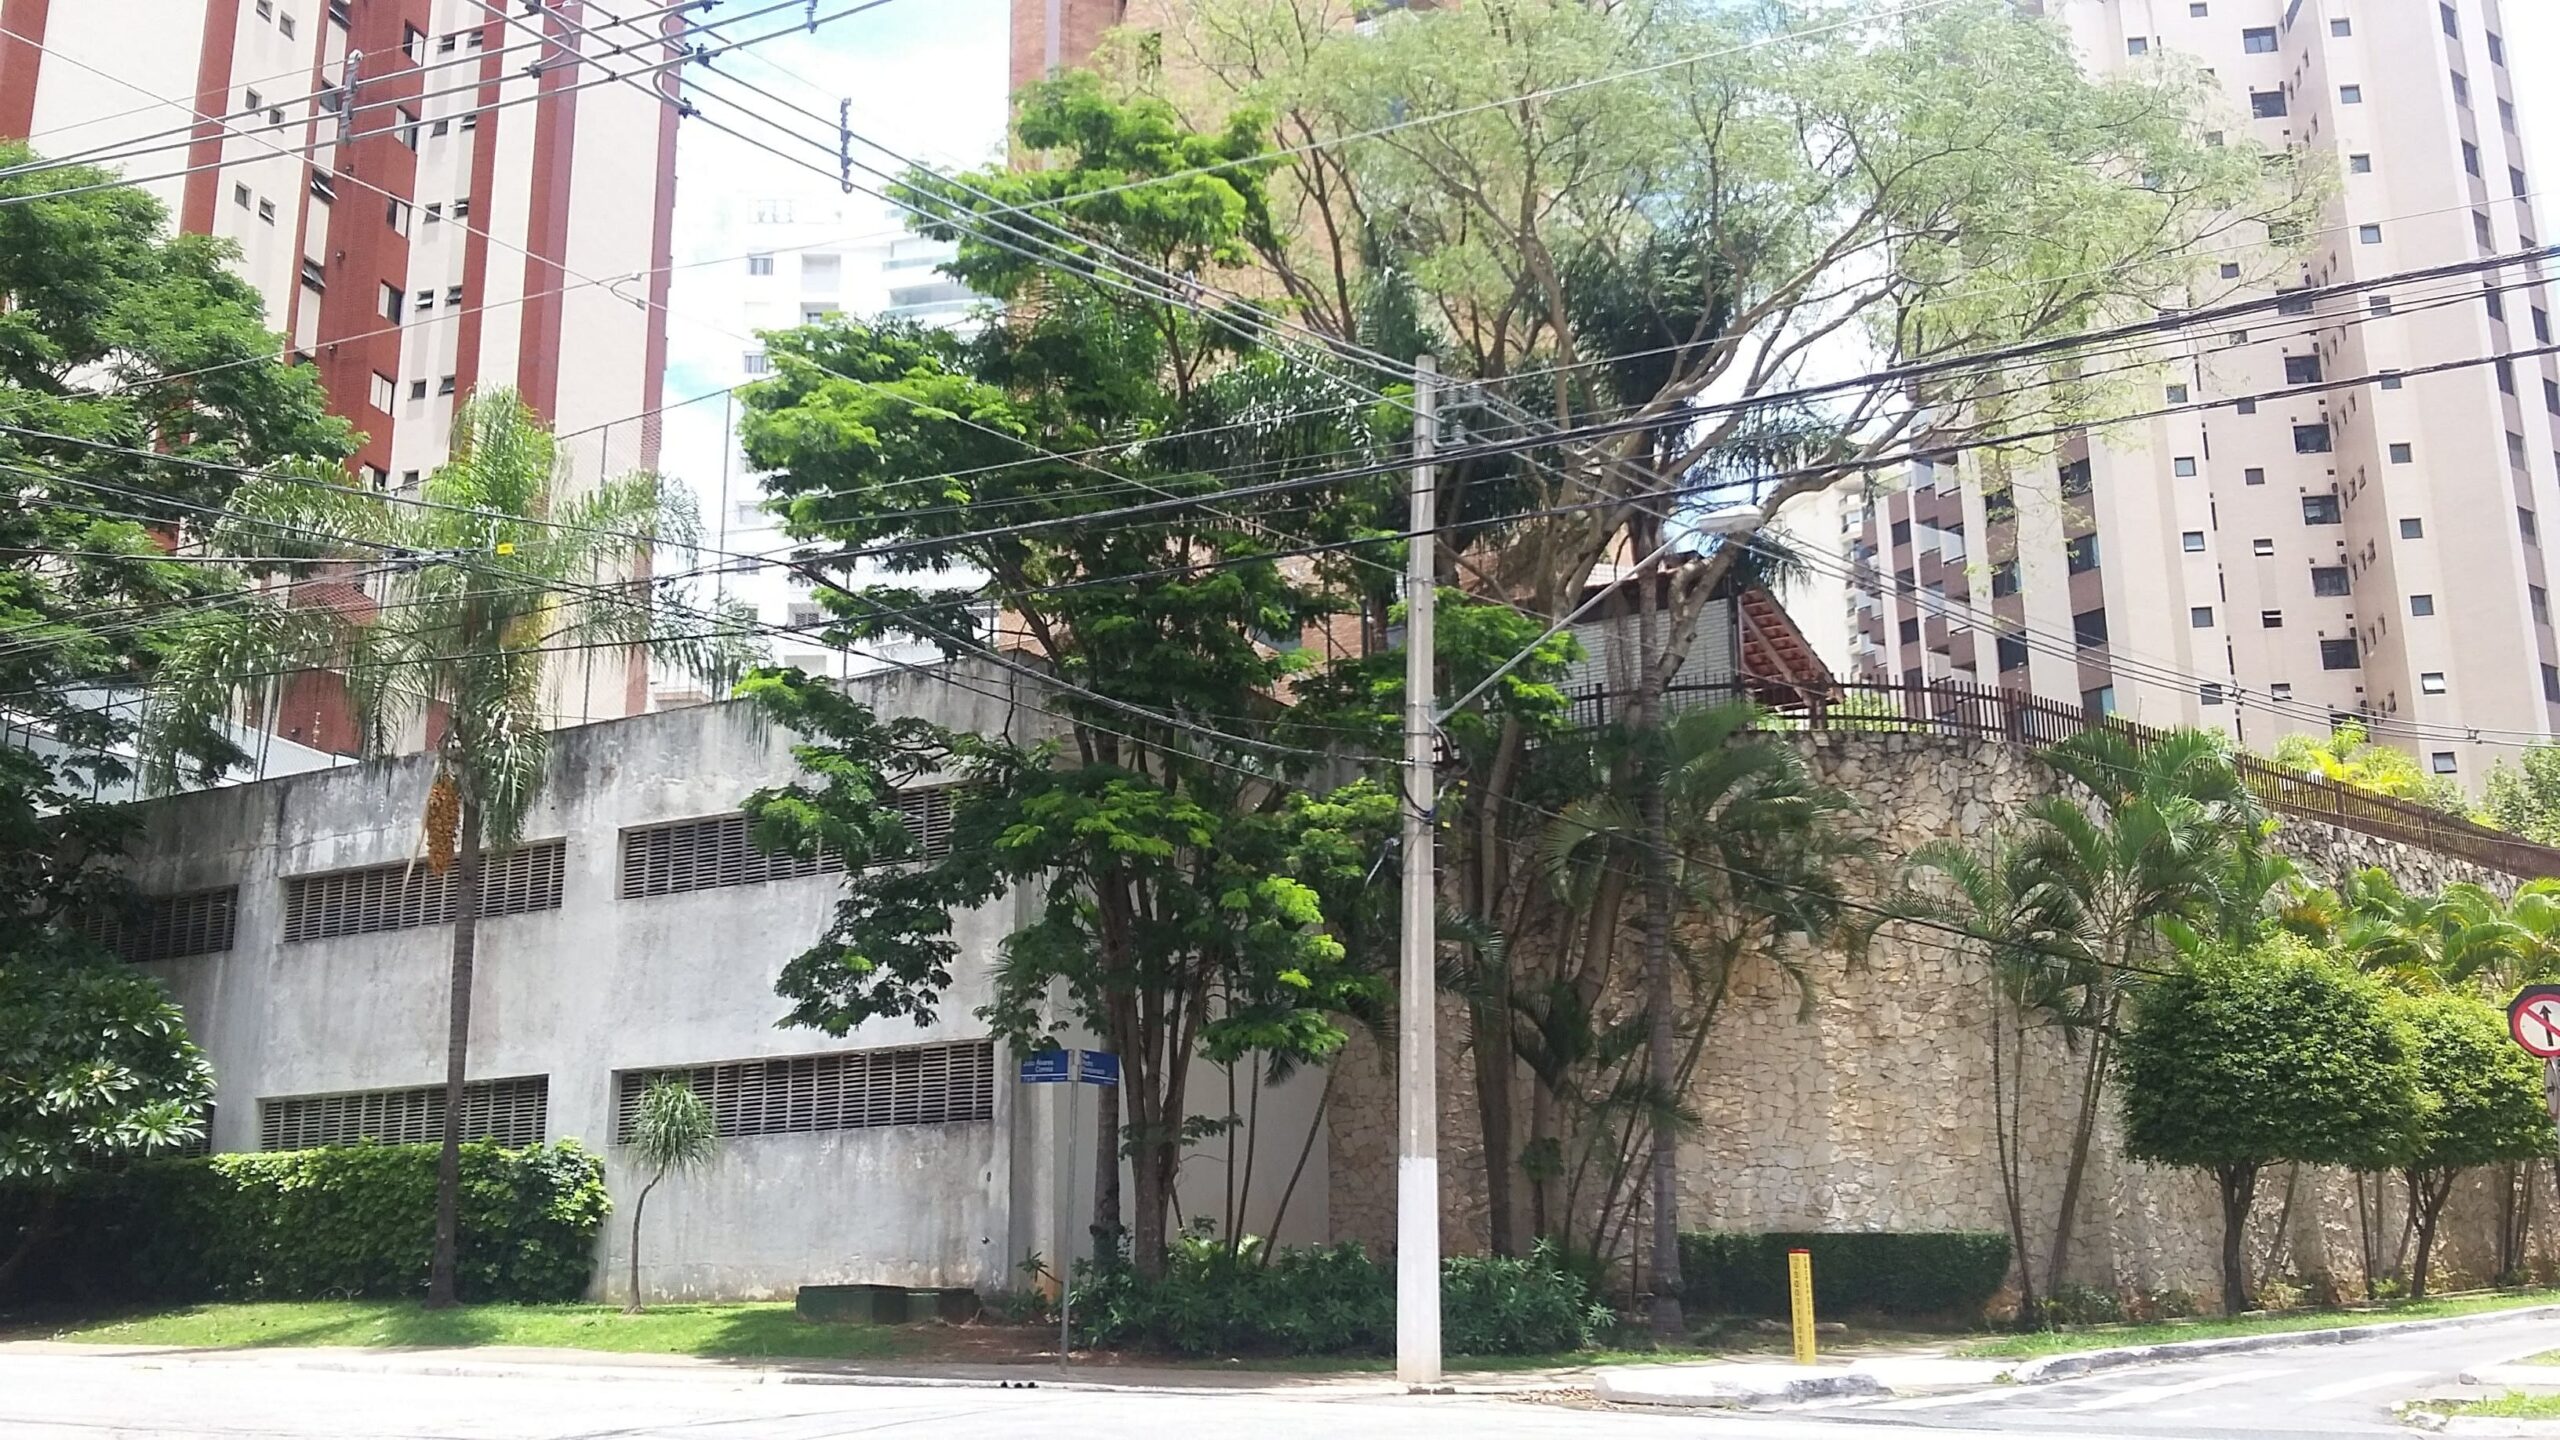 “Bairros planejados” de São Paulo: oportunidades desperdiçadas